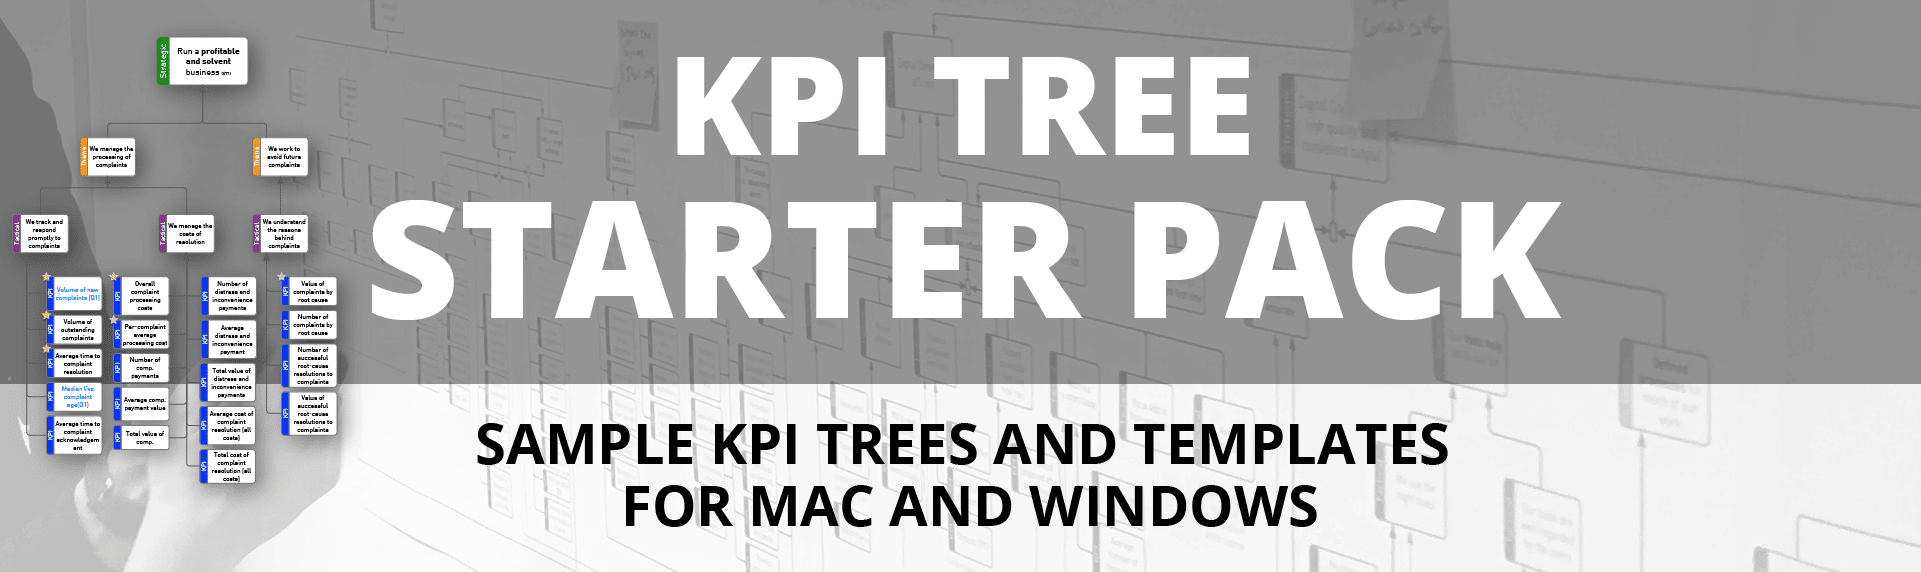 KPI Tree Starter Pack Graphic